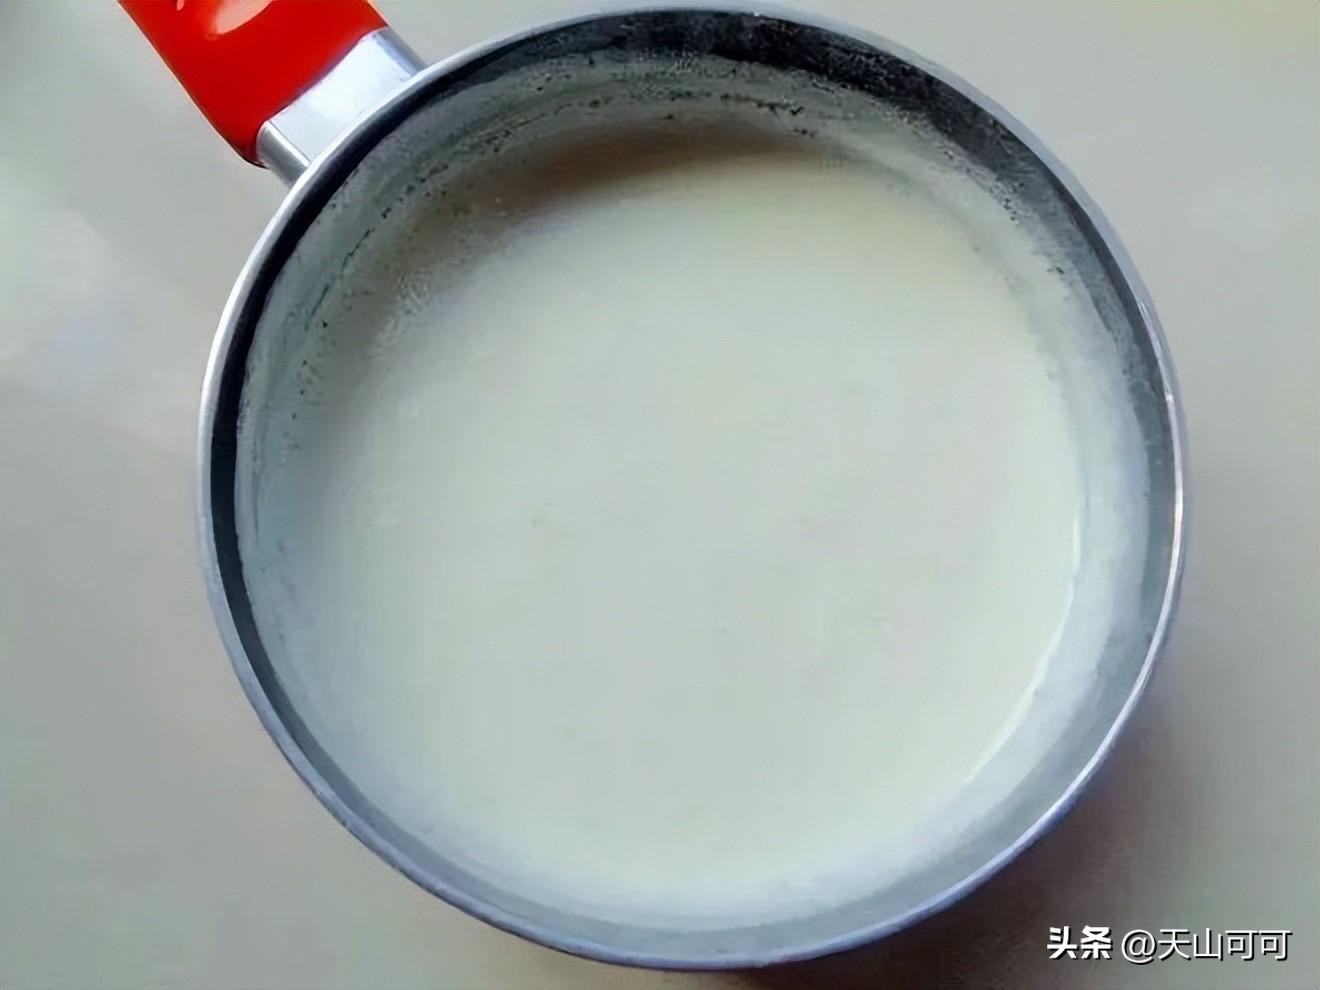 有机纯牛奶和普通纯牛奶一样吗？有什么区别？